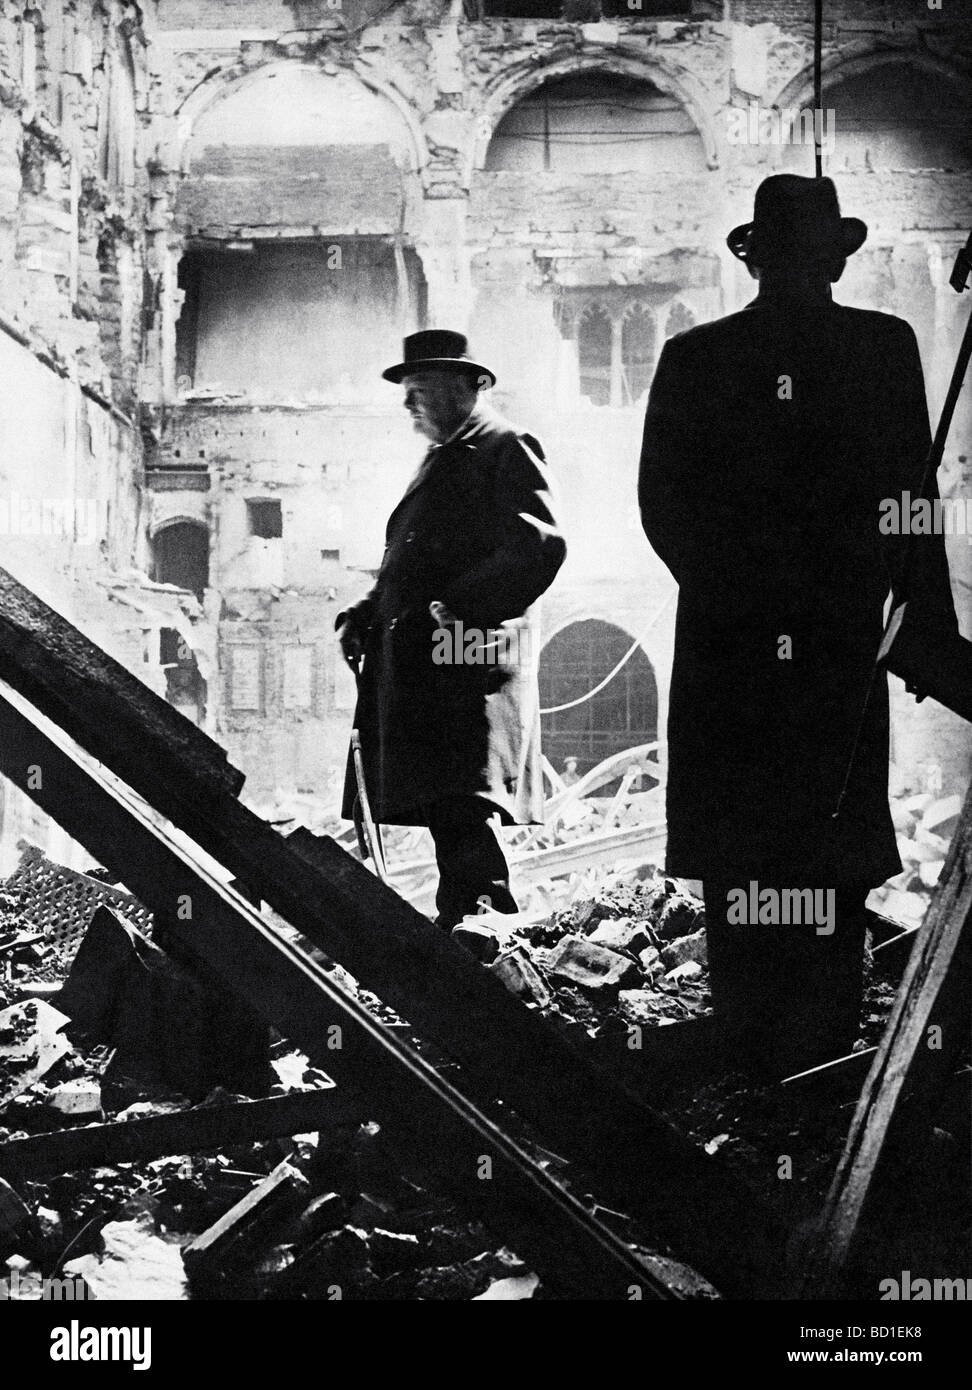 WINSTON CHURCHILL inspecte les ruines de la Chambre des communes après un raid de nuit les 10/11 mai 1941 Banque D'Images